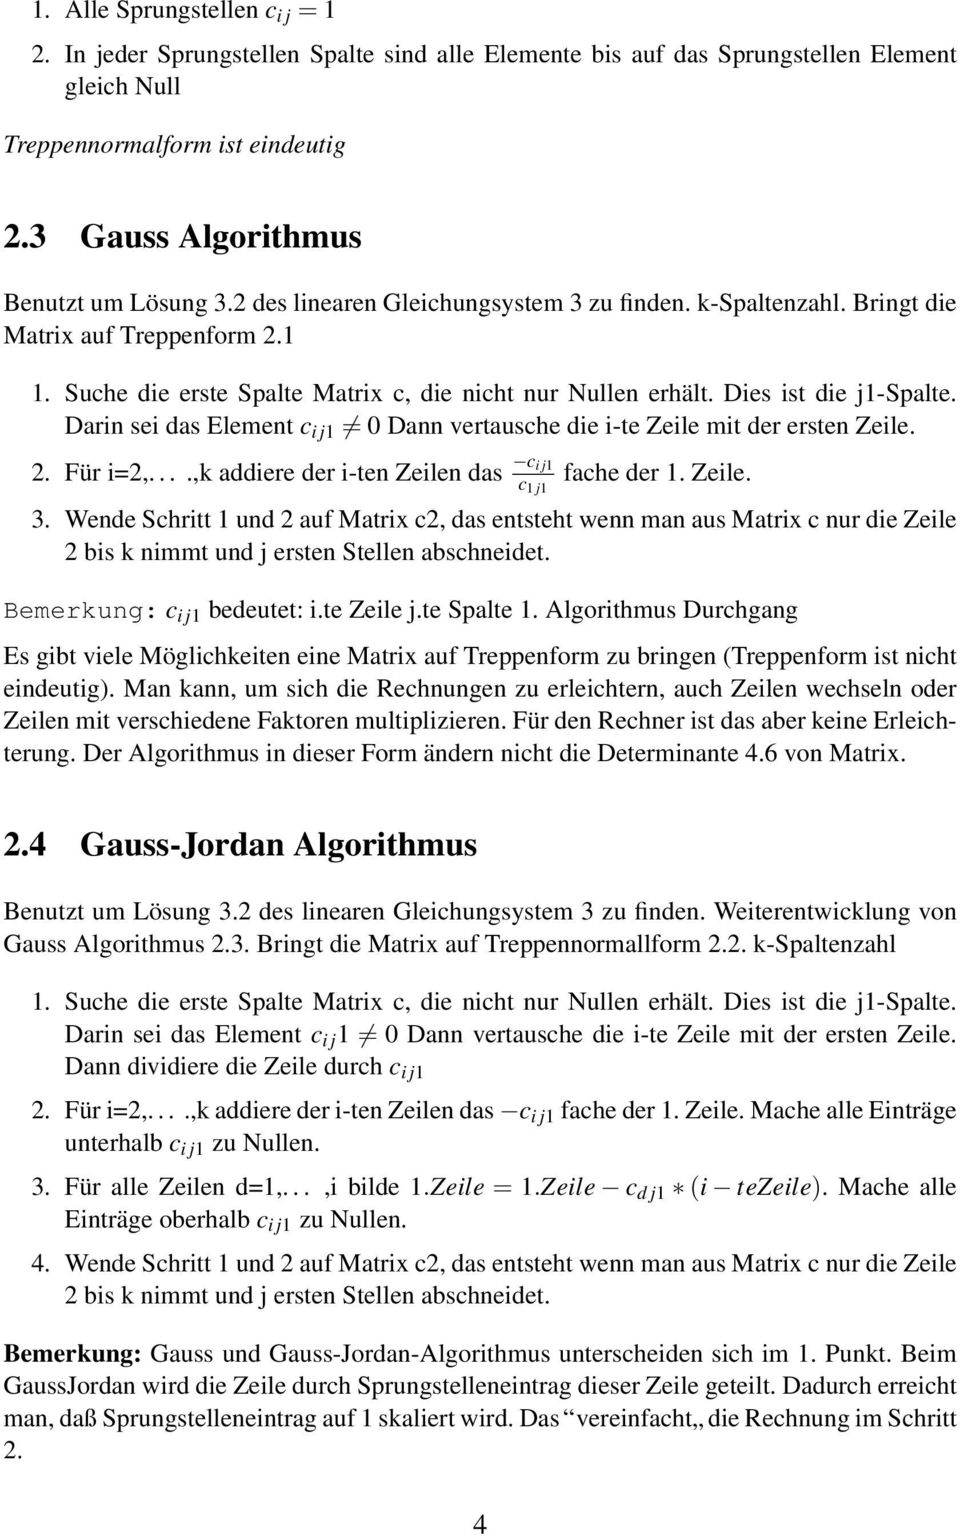 Suche die erste Spalte Matrix c, die nicht nur Nullen erhält. Dies ist die j1-spalte. Darin sei das Element c i j1 Dann vertausche die i-te Zeile mit der ersten Zeile. 2. Für i=2,.